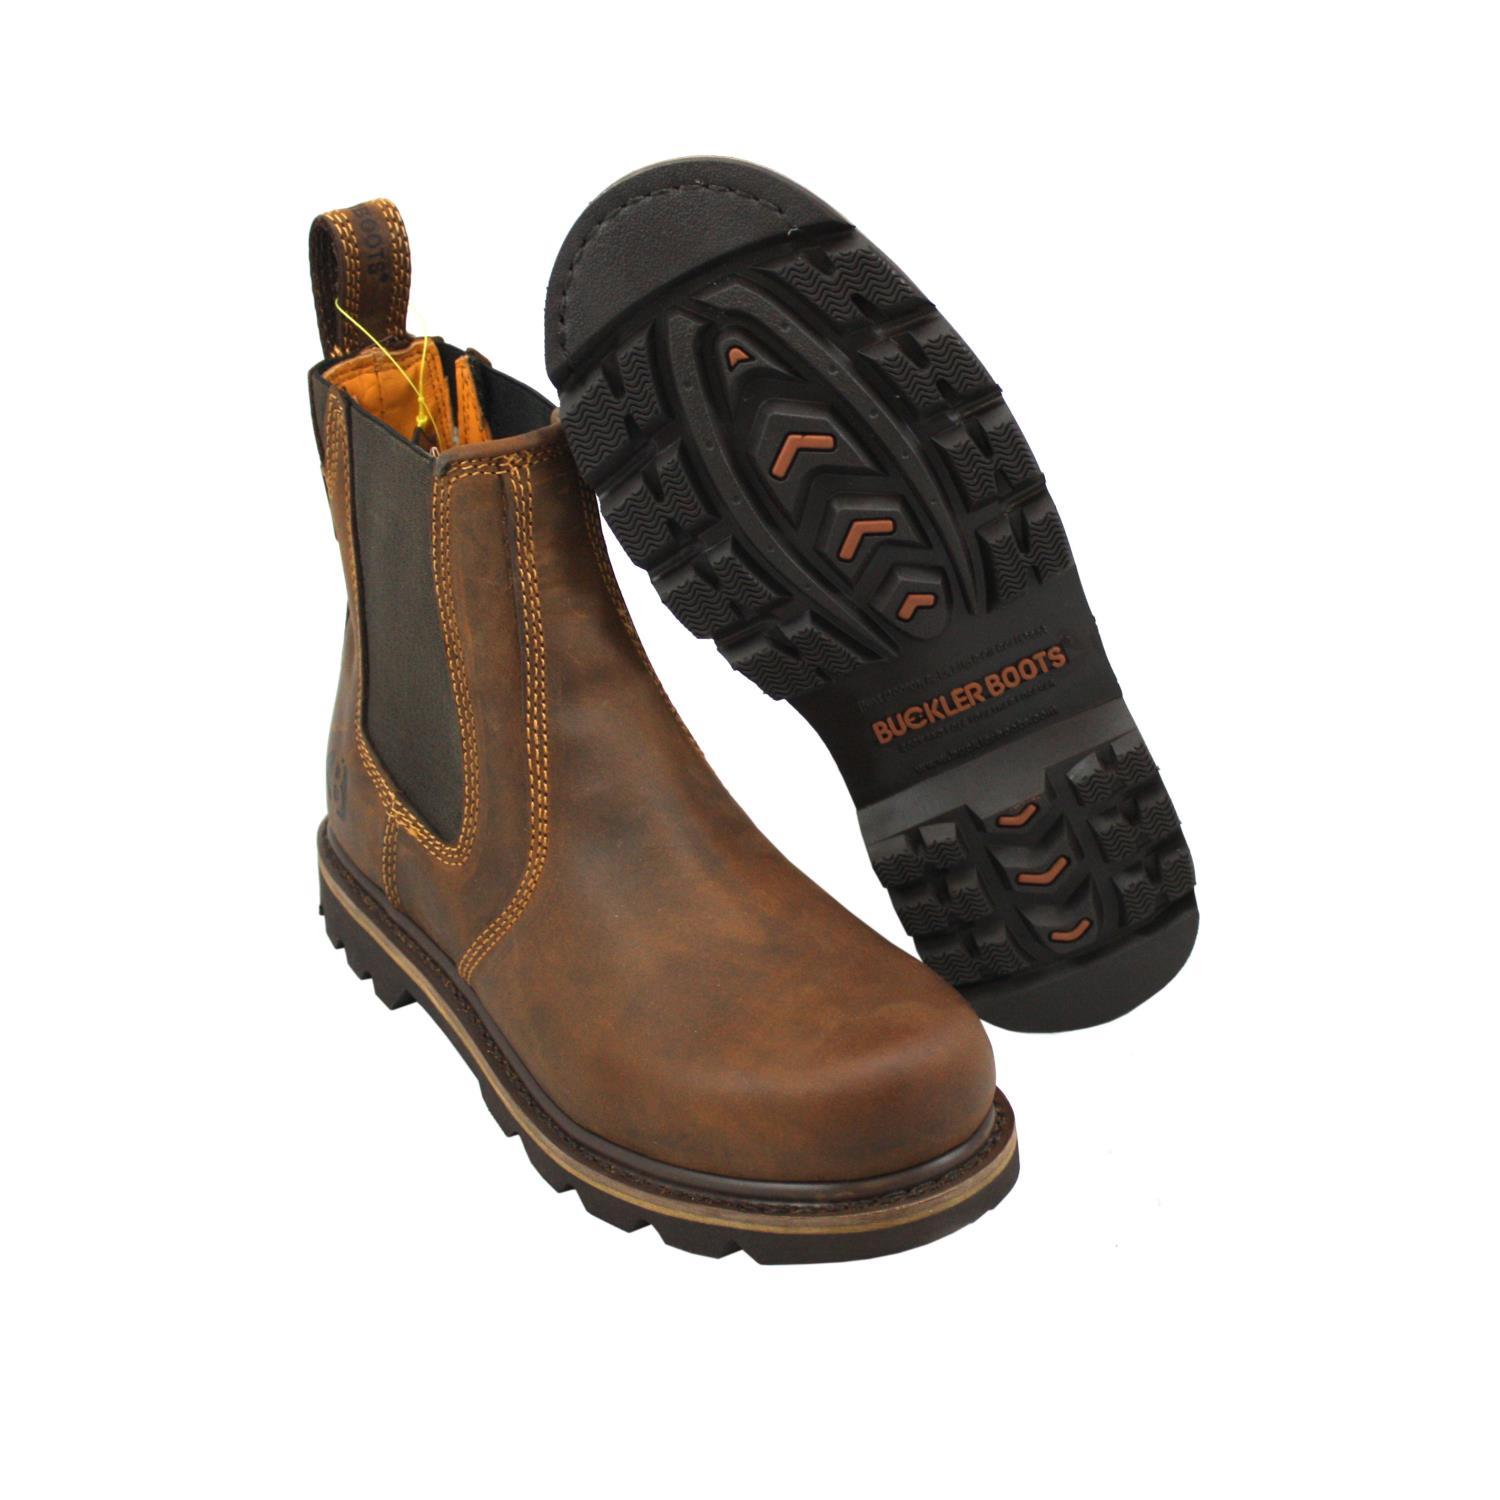 waterproof dealer boots